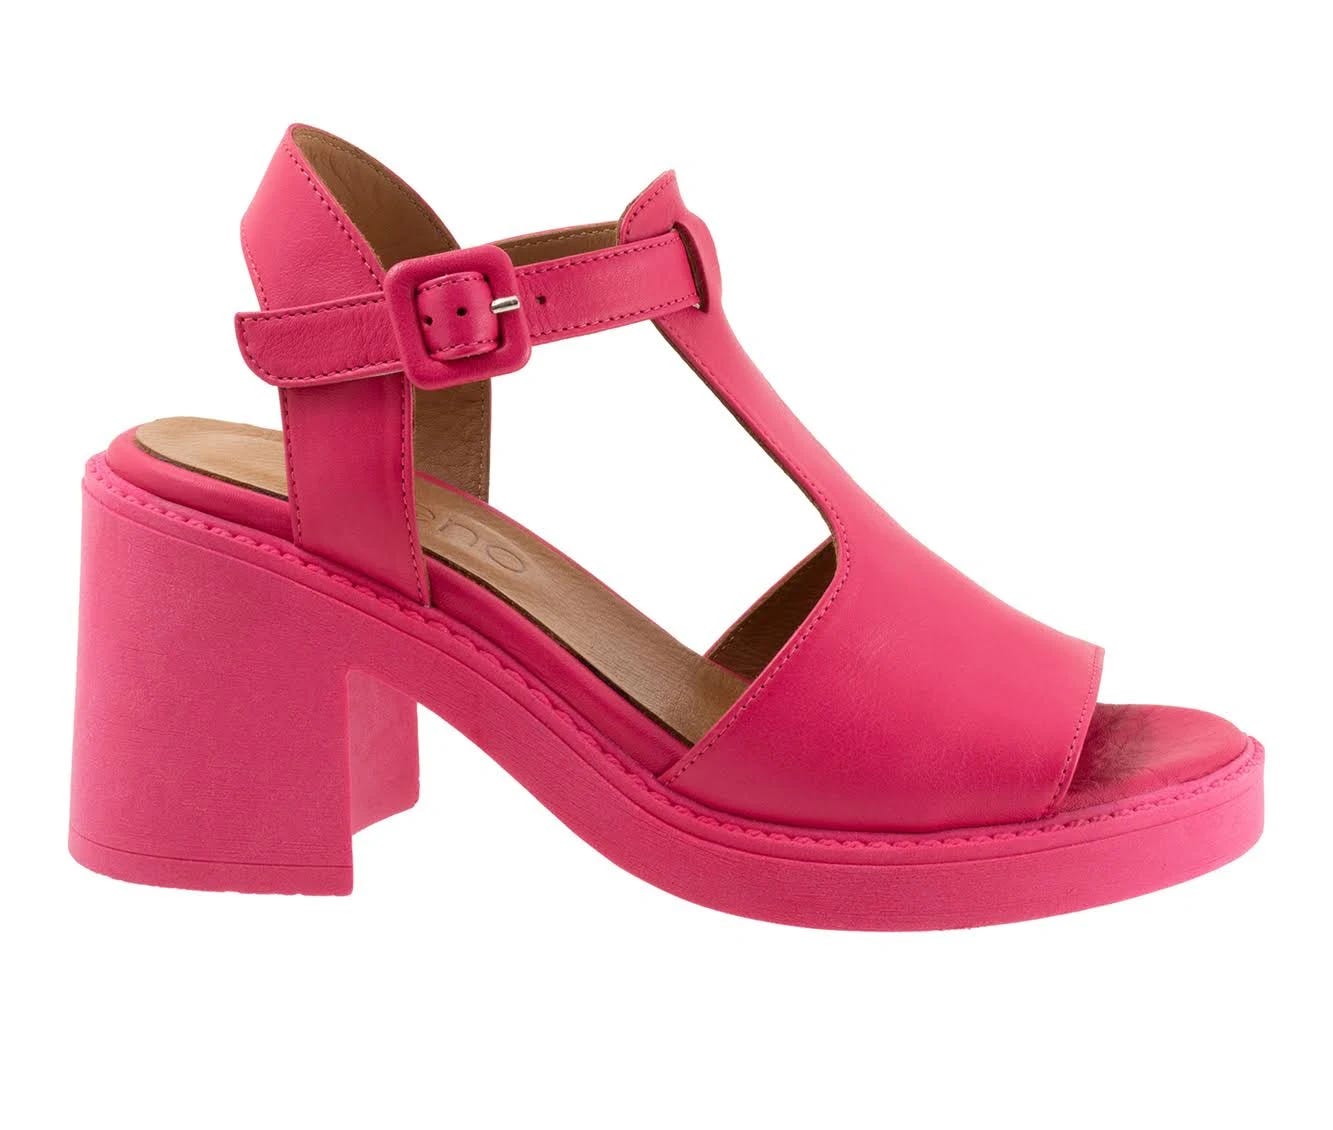 Hot Pink Heel Buckle Sandals by Bueno McKenzie | Image